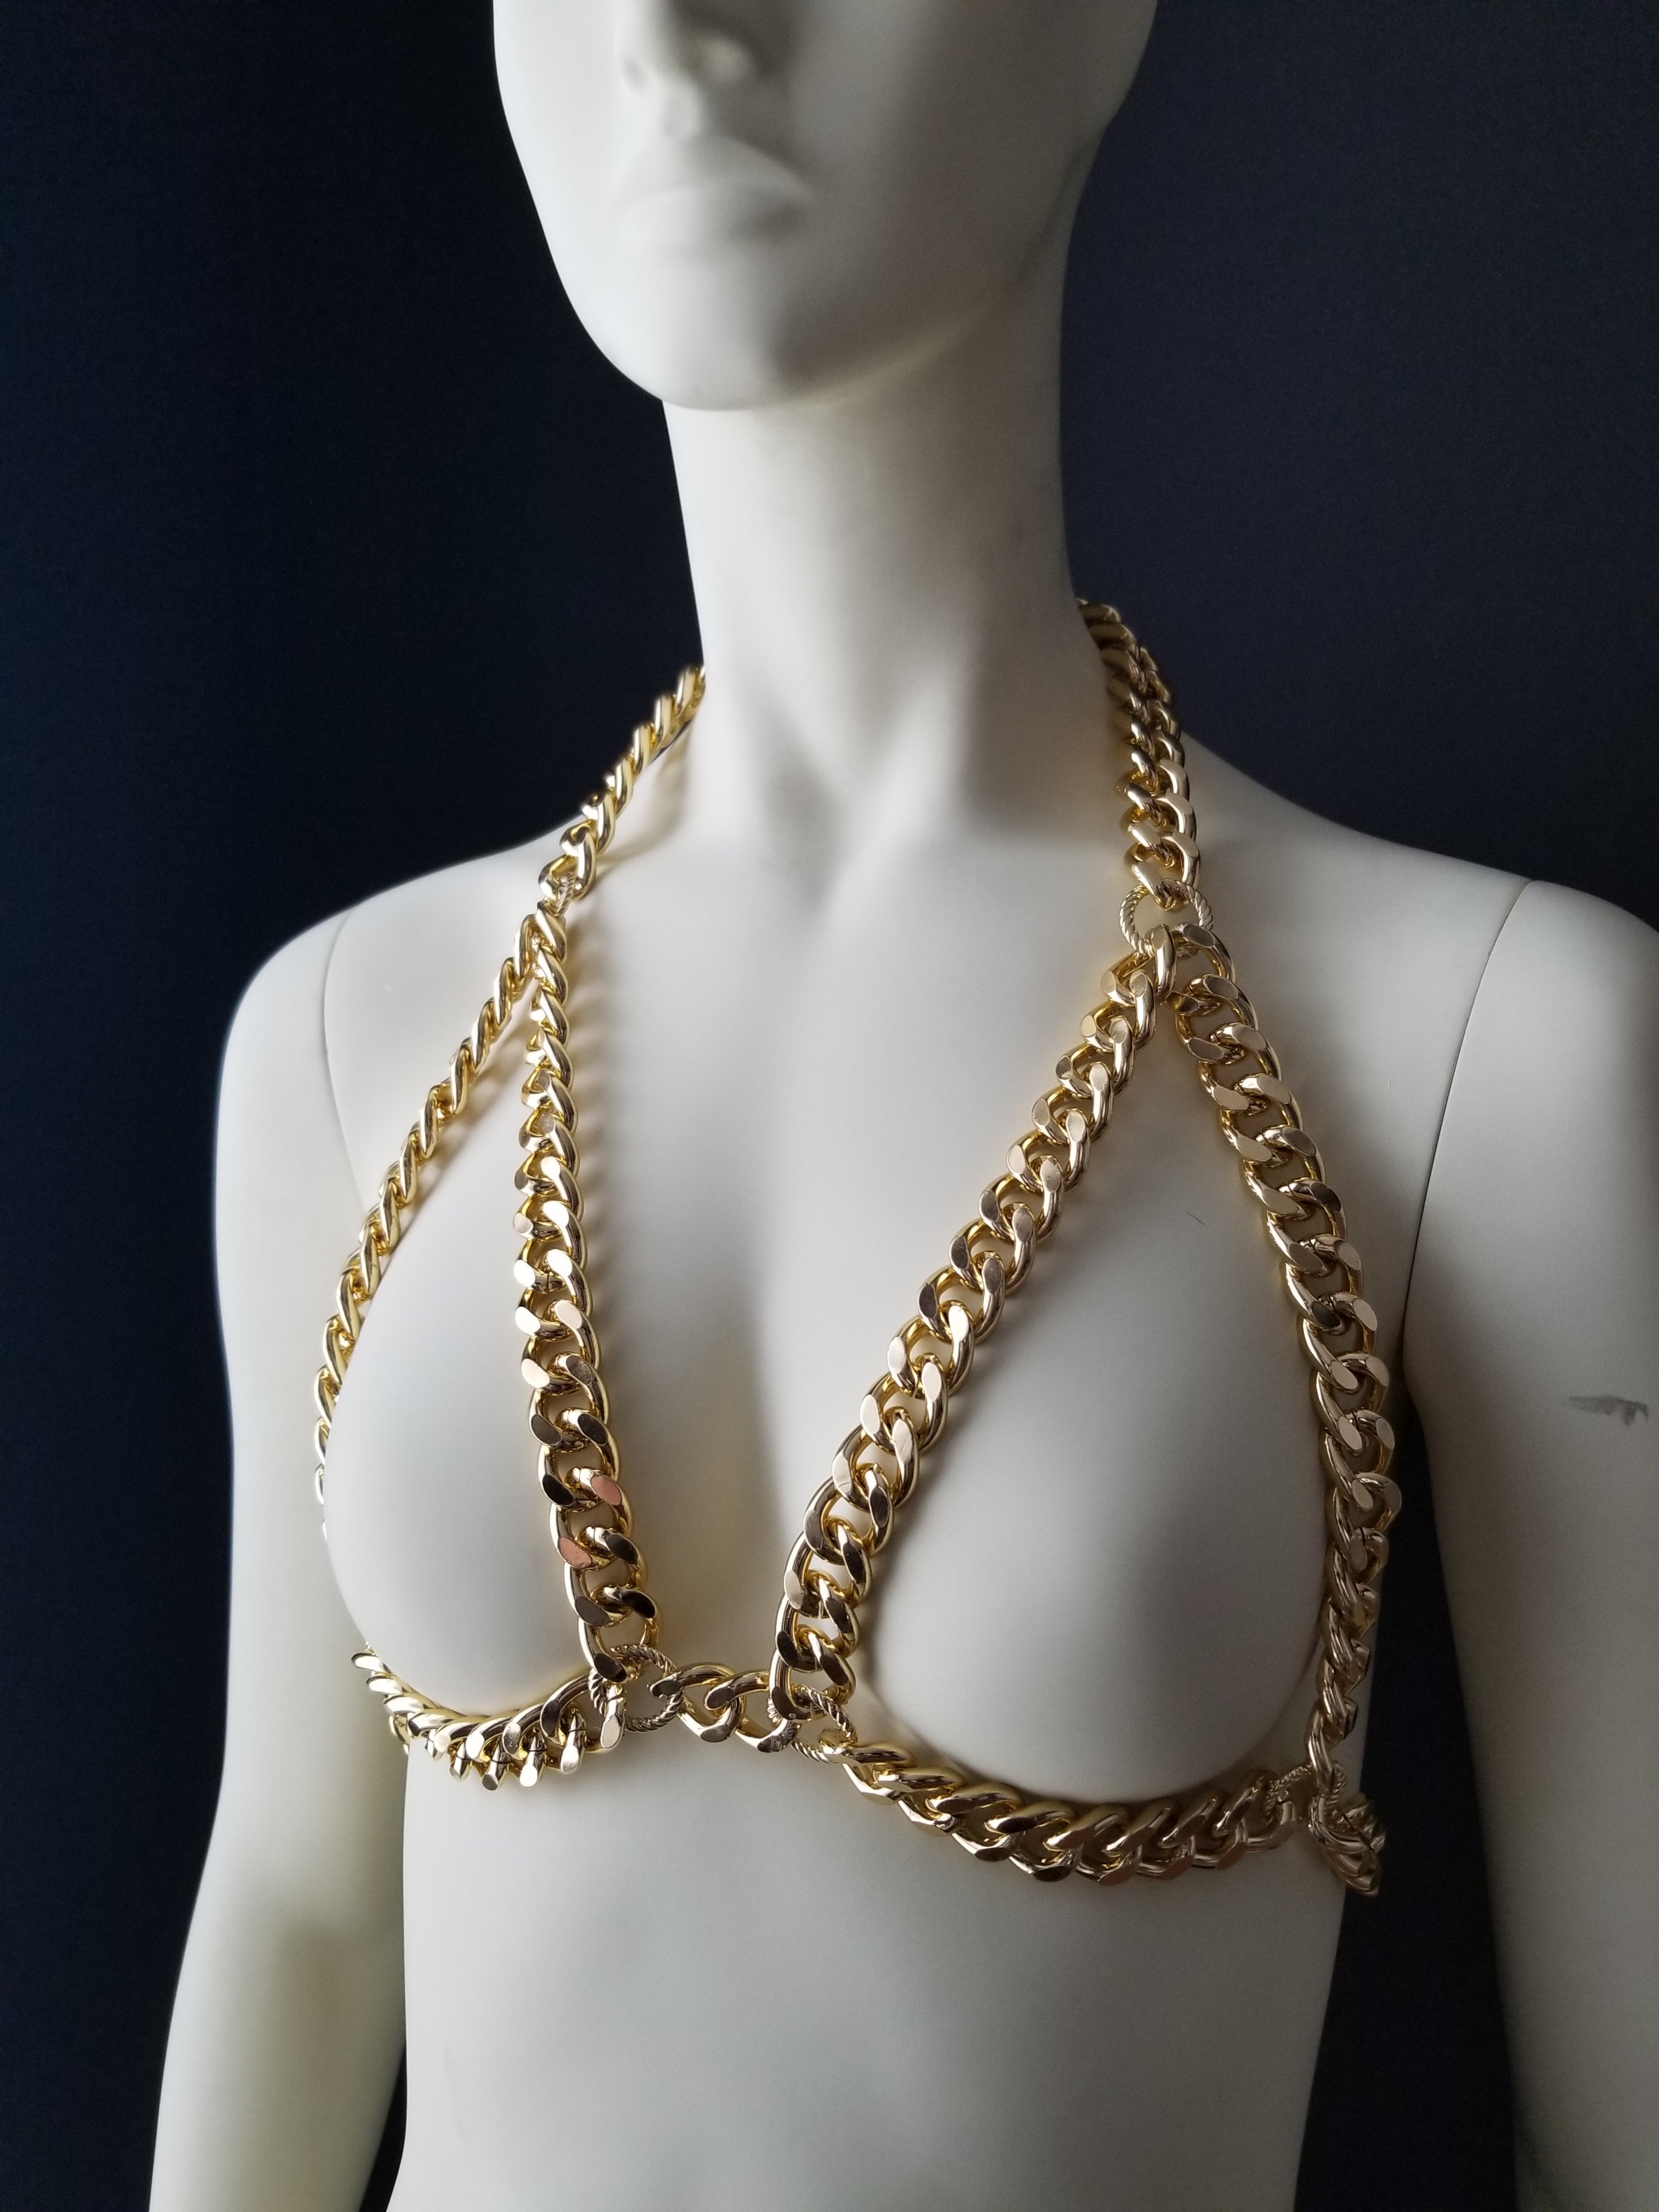 Gold Chain Bralette Bra for Women for Music Festival Costume Jewelry –  FREEWHEELER